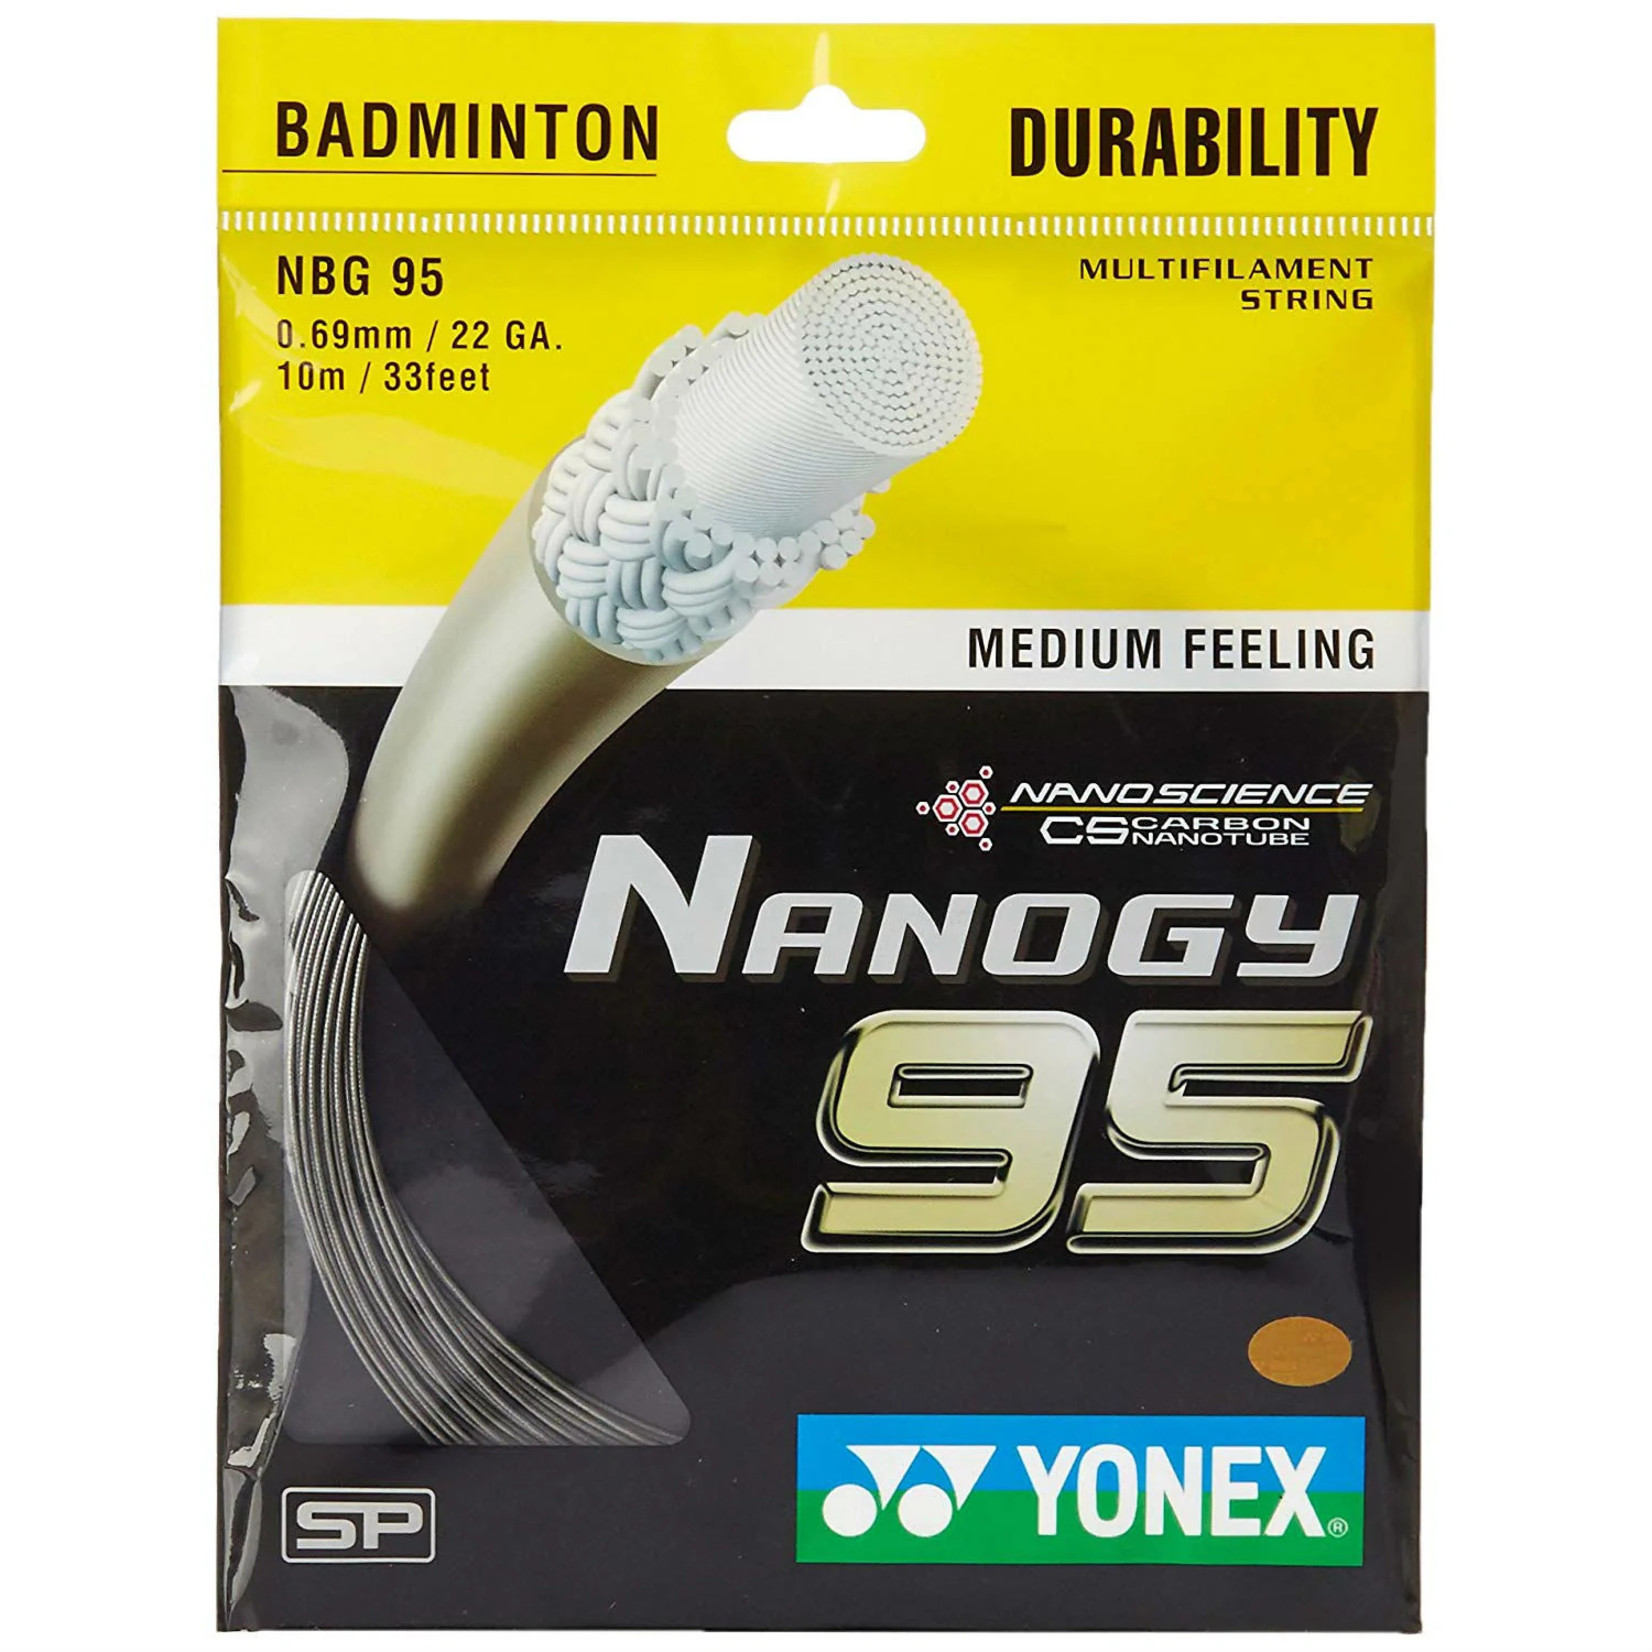 Yonex Yonex Nanogy 95 Badminton Strings